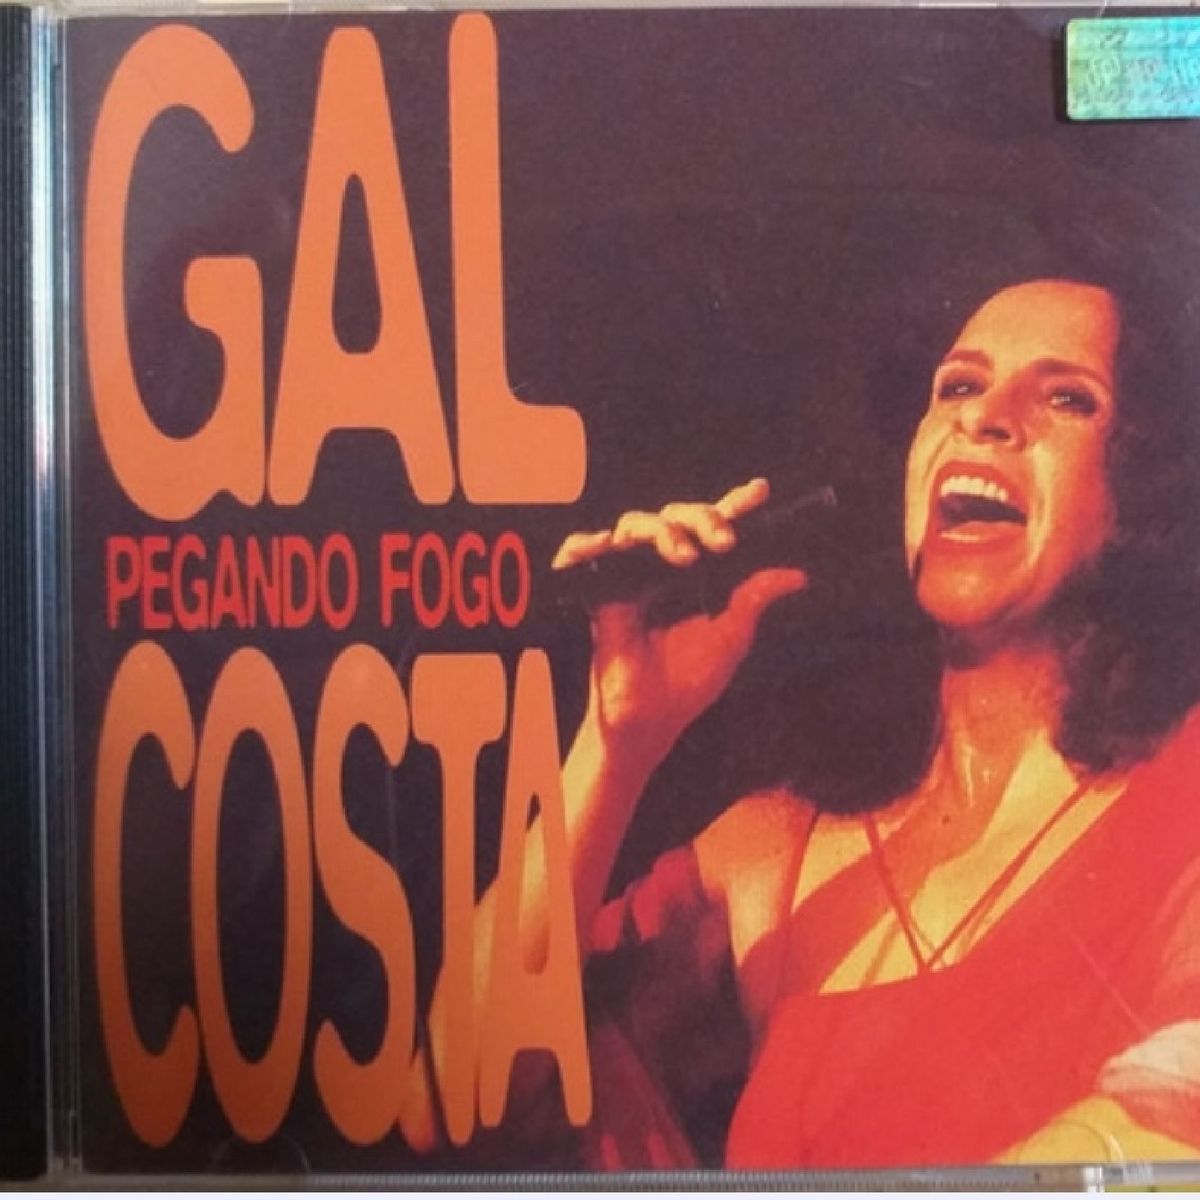 Gal Costa — Pegando Fogo cover artwork